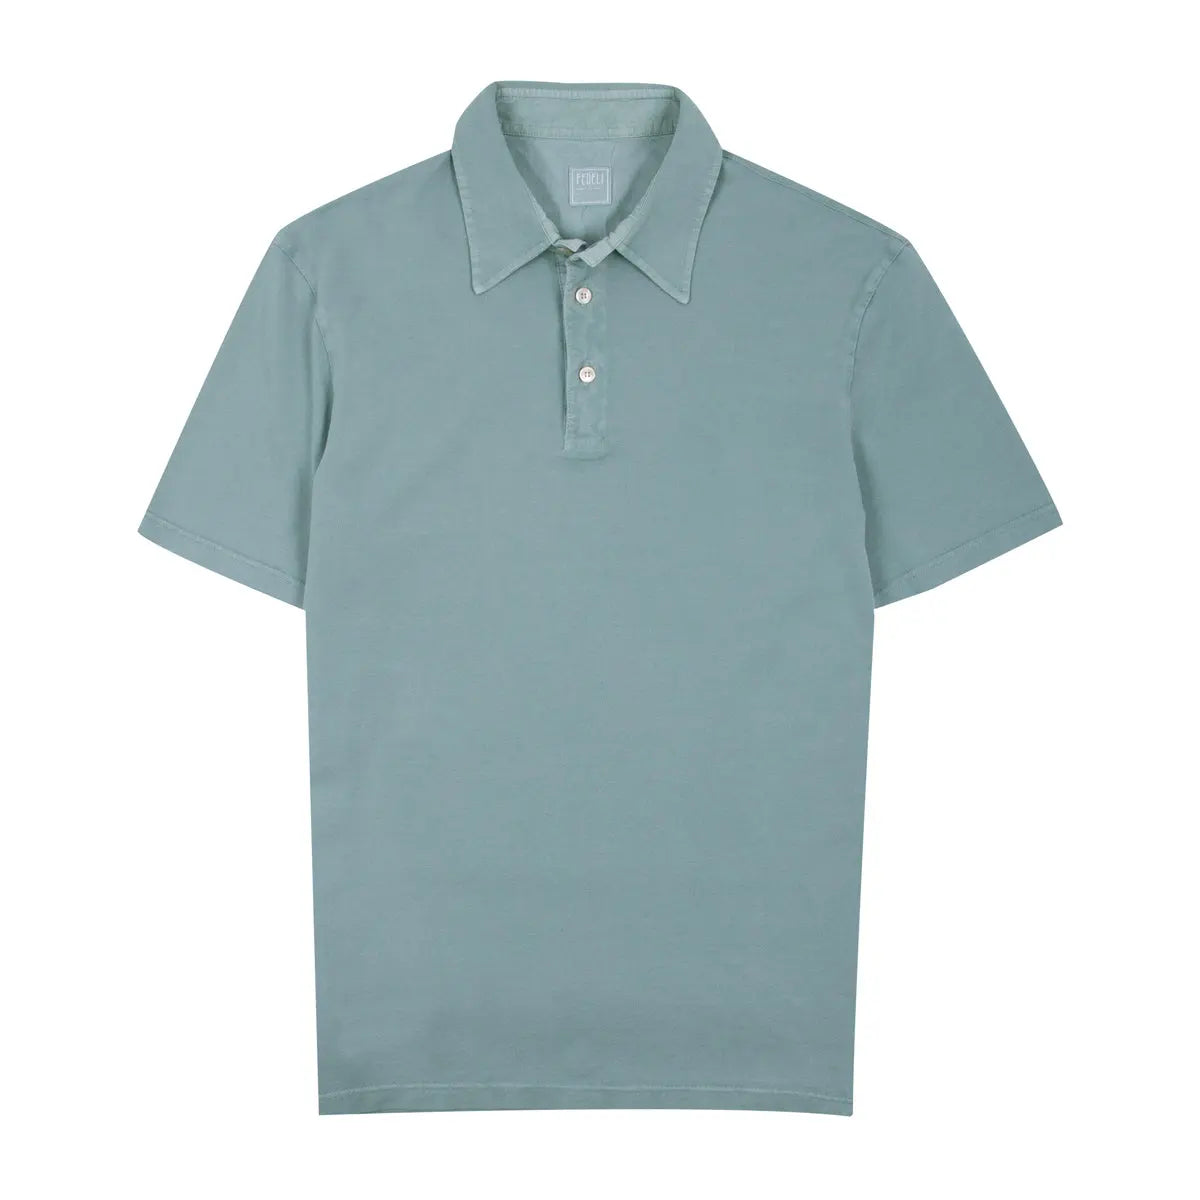 Cotton Piqué Polo Shirt Green S/S POLOS FEDELI   